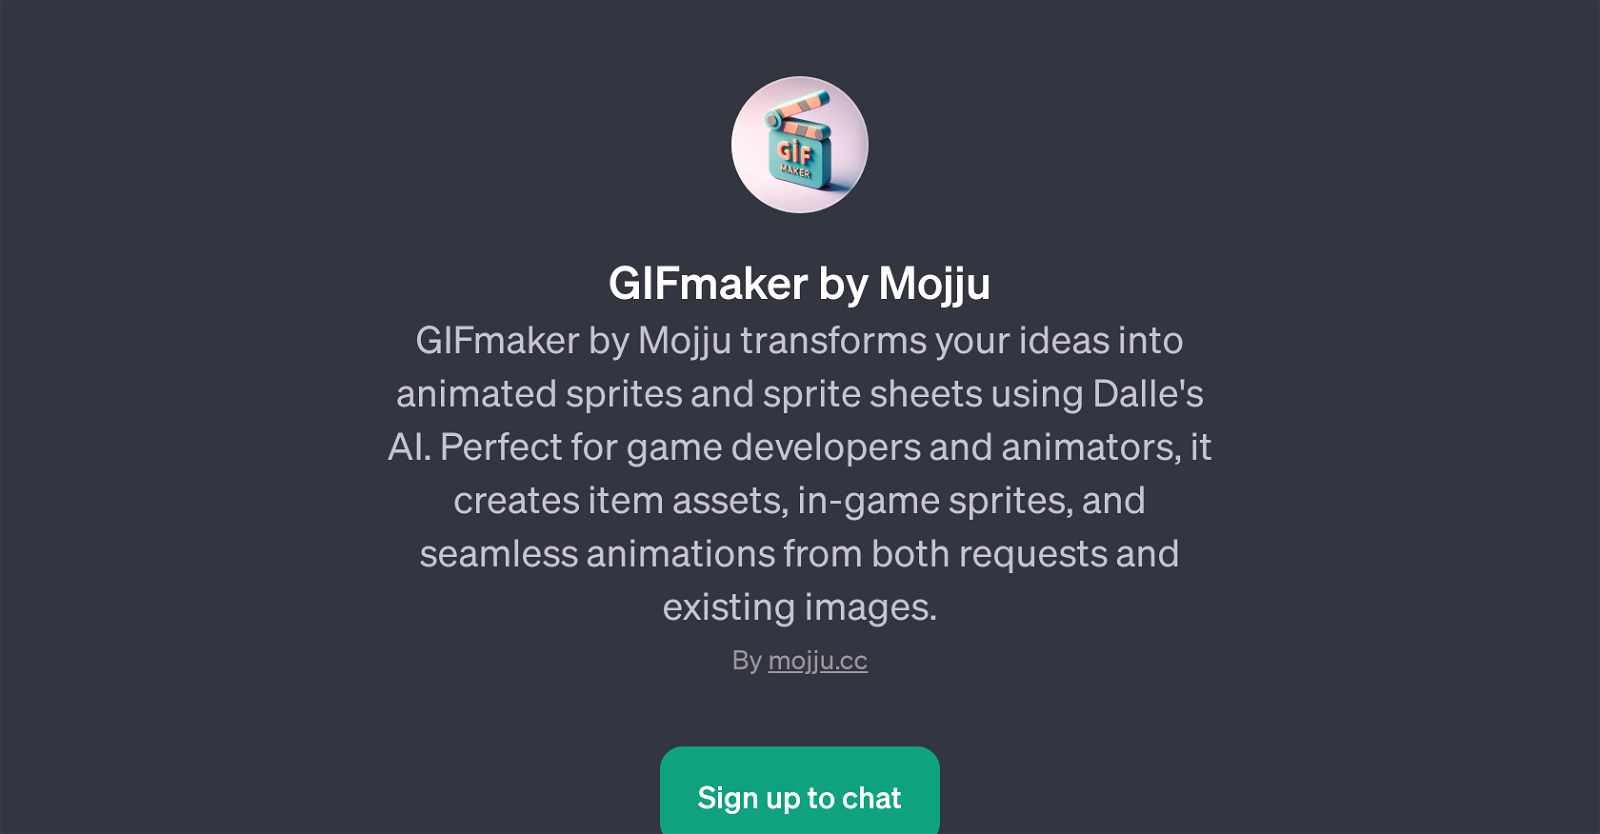 GIFmaker by Mojju website